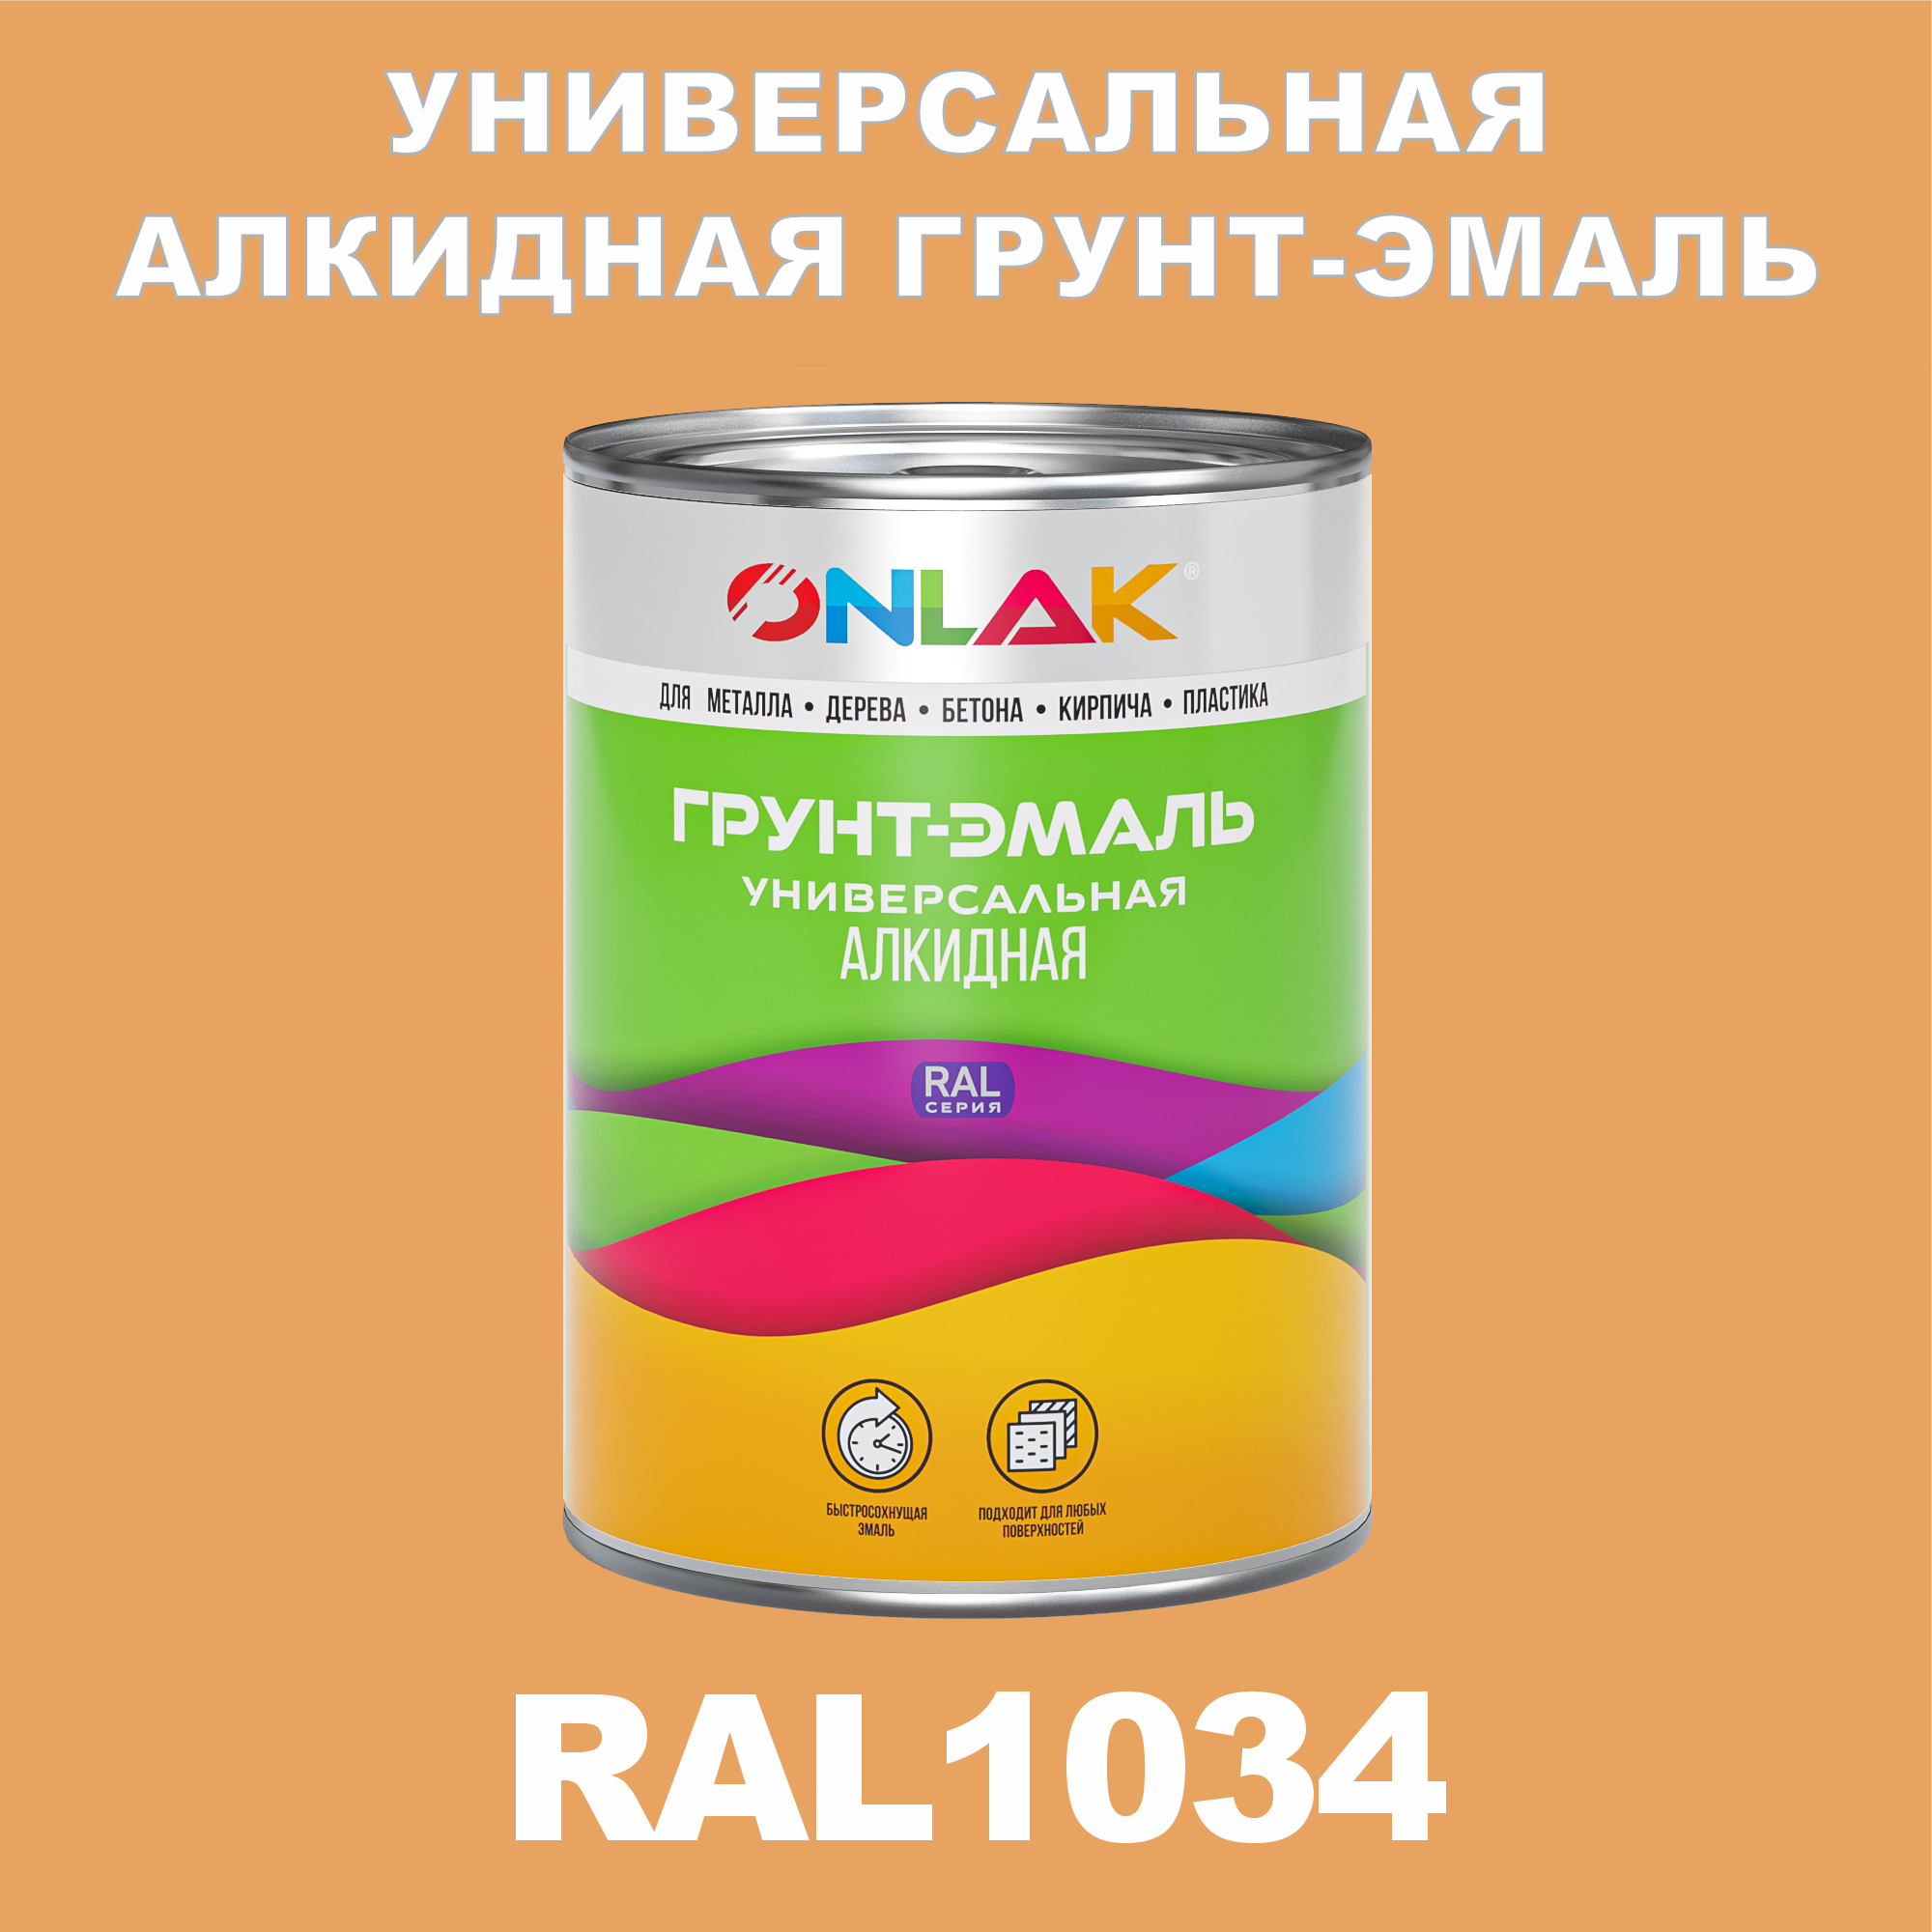 Грунт-эмаль ONLAK 1К RAL1034 антикоррозионная алкидная по металлу по ржавчине 1 кг грунт эмаль yollo по ржавчине алкидная синяя 0 9 кг